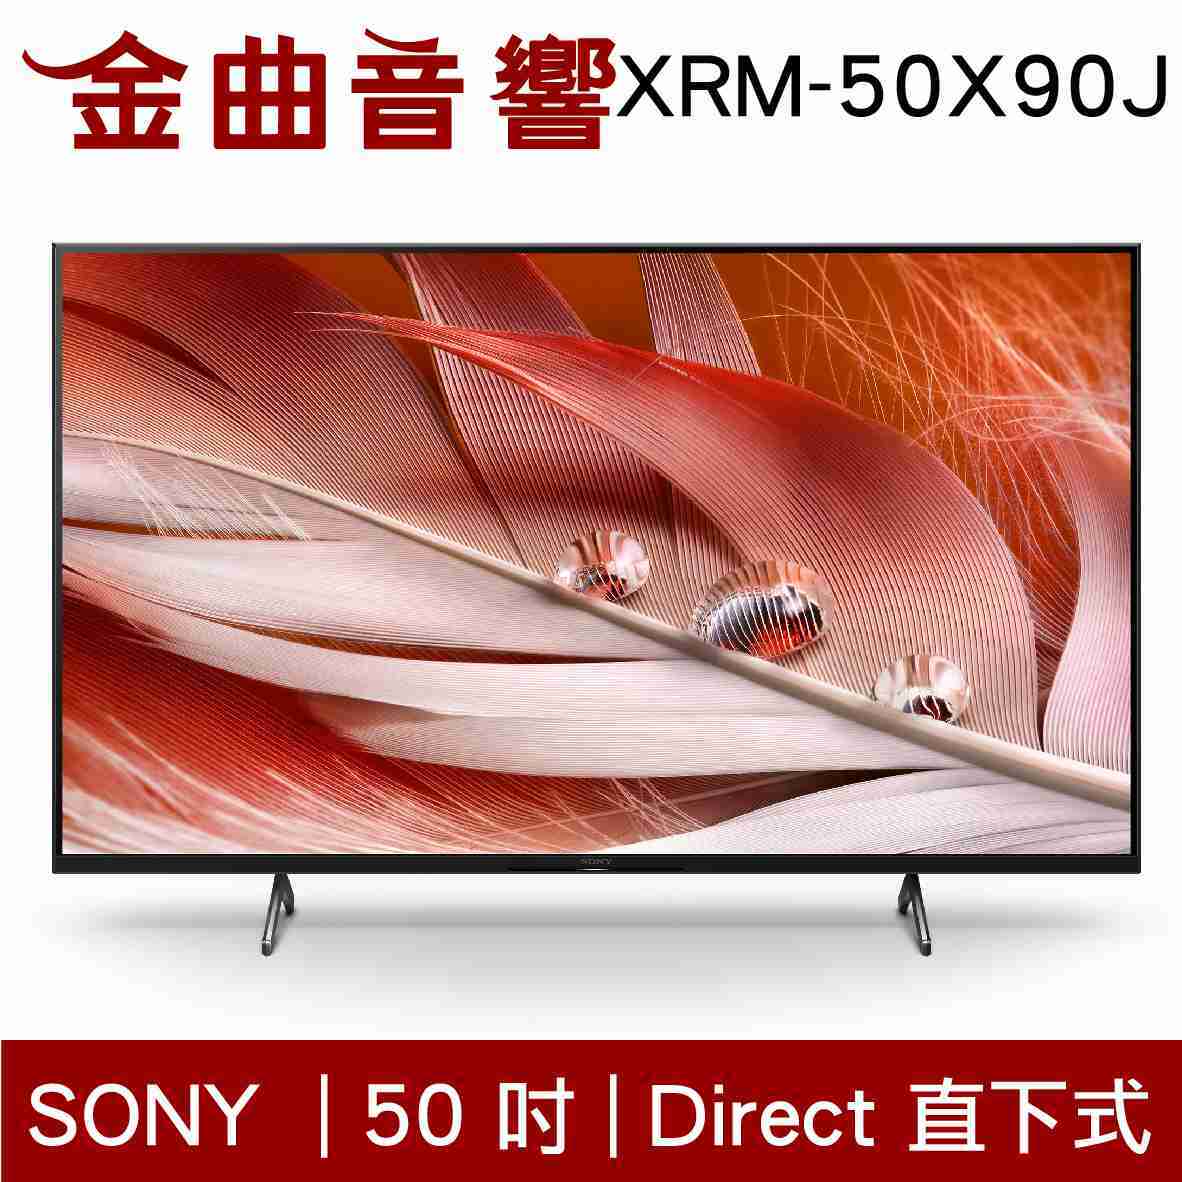 SONY 索尼 50吋 XRM-50X90J 4K 全陣列LED XR 液晶 電視 2021 | 金曲音響